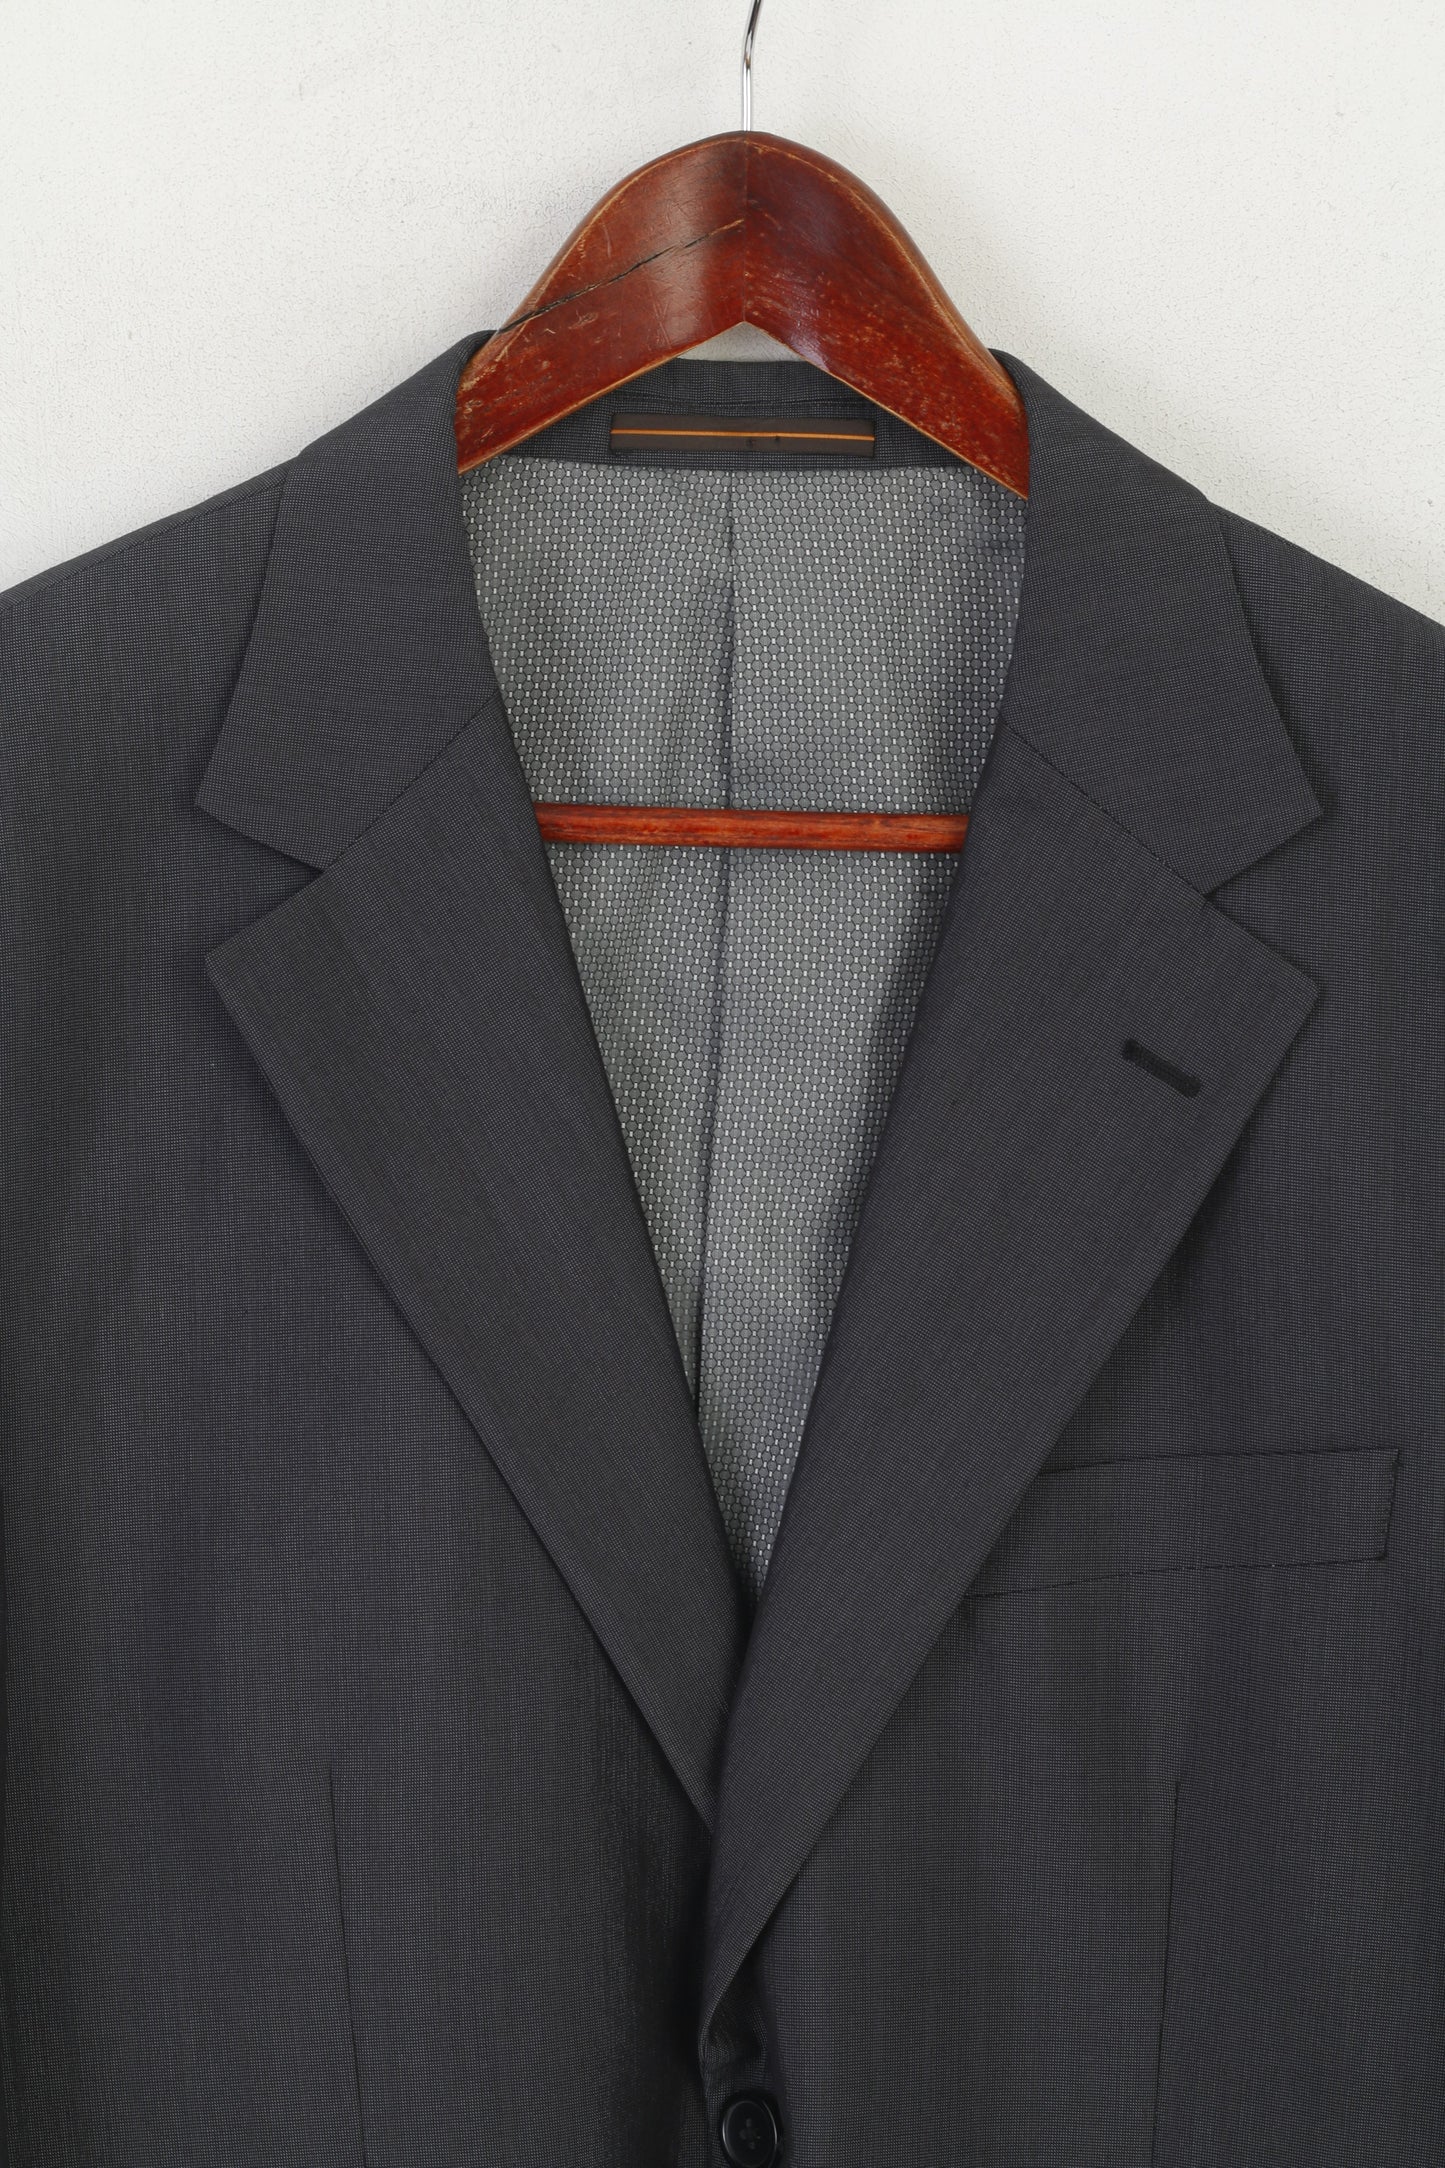 San Luca Men 54 44 Blazer Charcoal Single Breasted Shiny Vintage Shoulder Pads Jacket